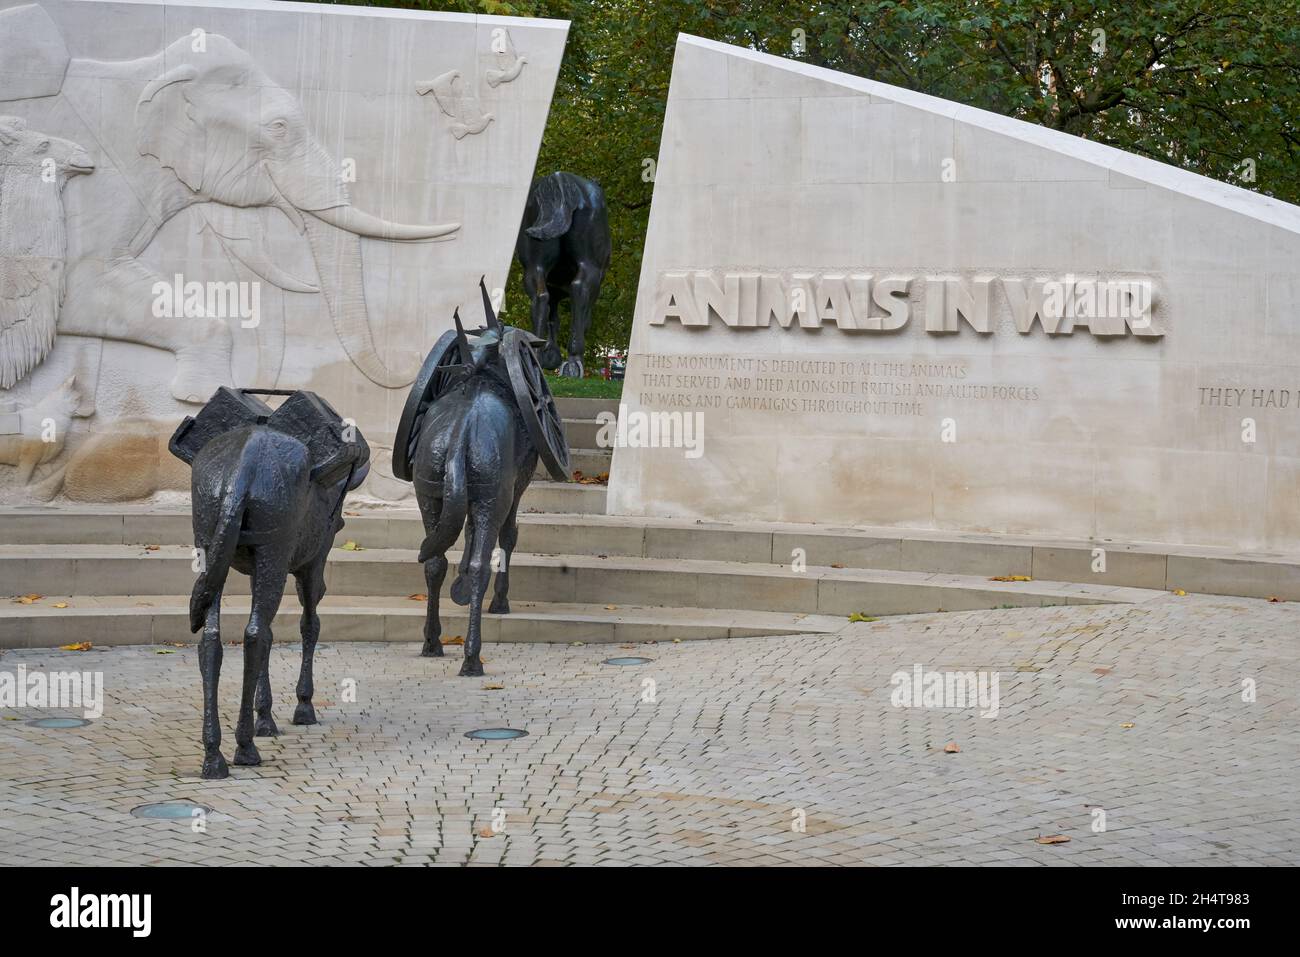 Animals in war memorial Stock Photo